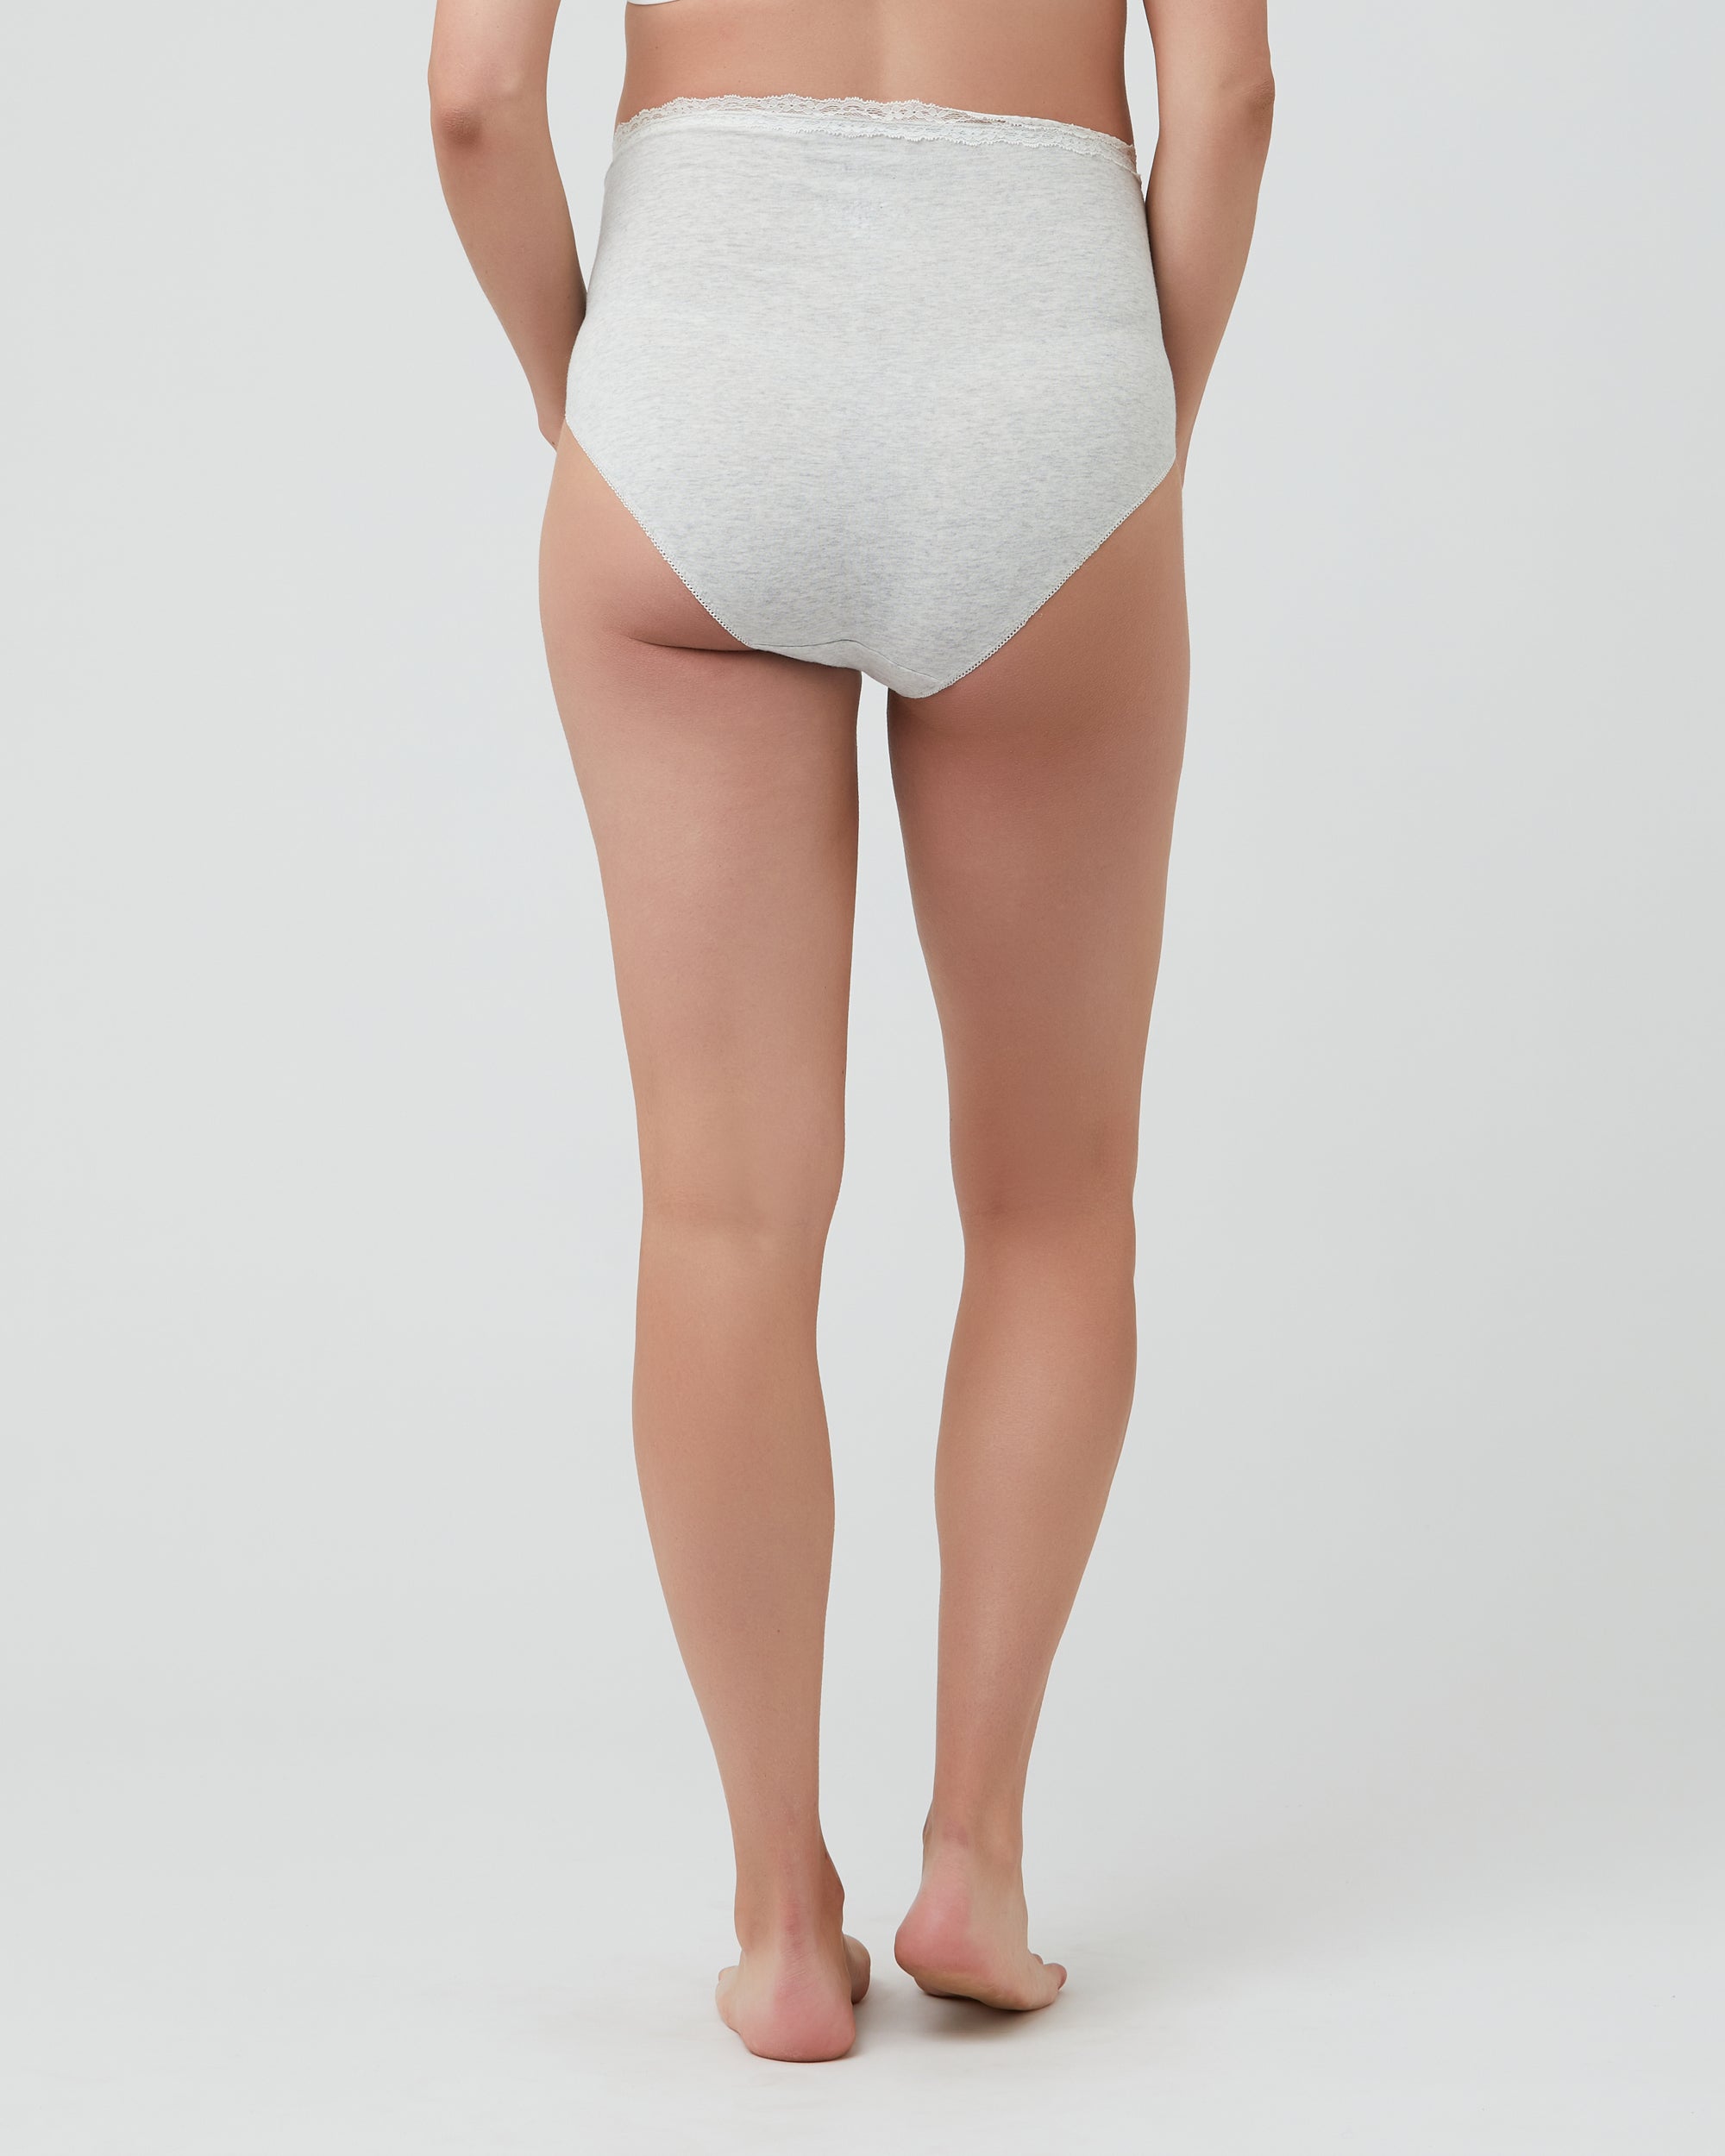 Engel organic cotton women's underwear, silver grey – Nest